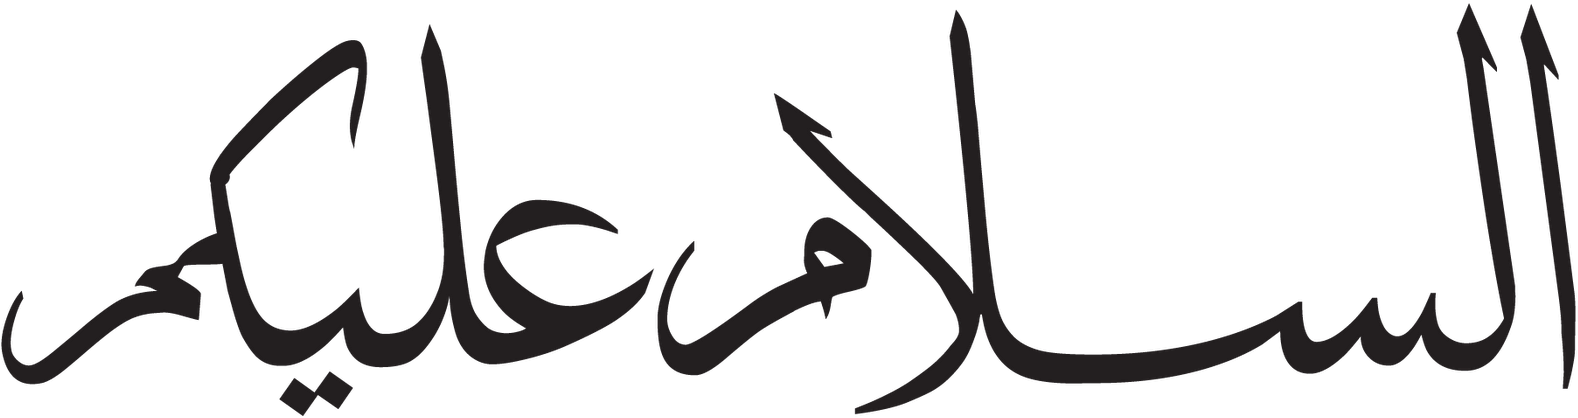 Арабская электронная группа. Арабские надписи. Арабская надпись на белом фоне. Арабские символы. Красивые надписи на арабском.